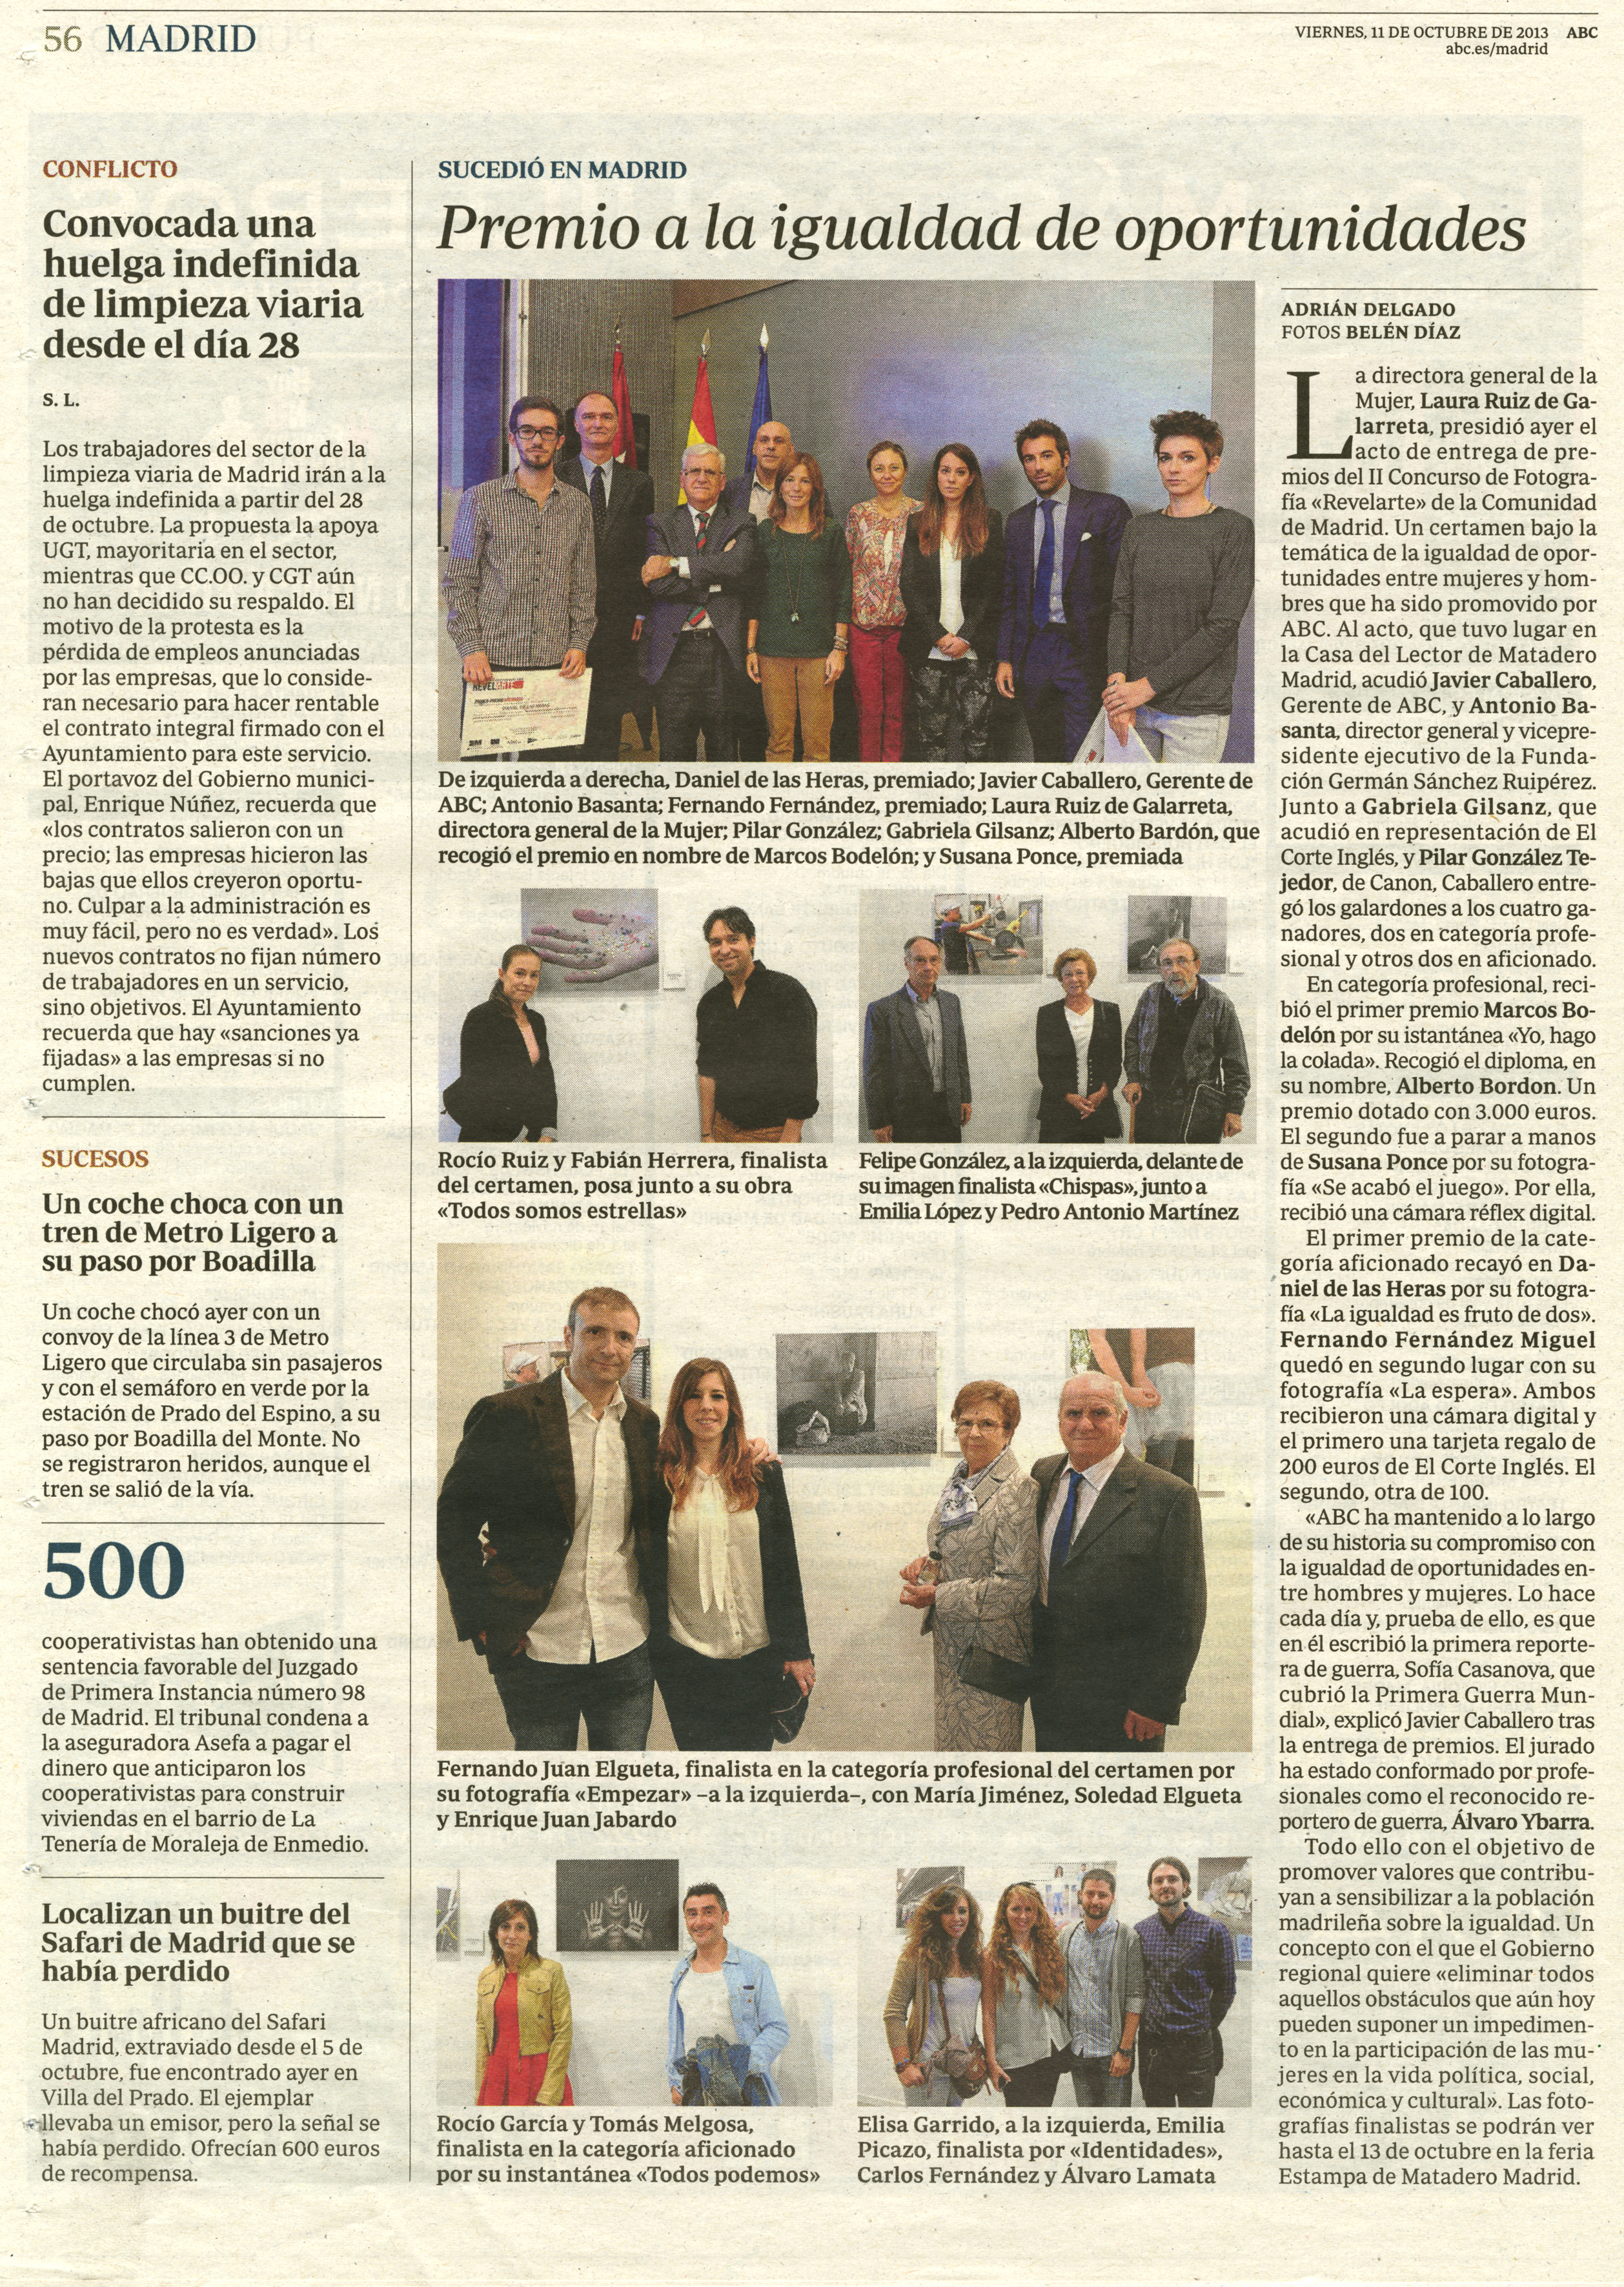 Publicación diario ABC, de exposición ESTAMPA 2013.